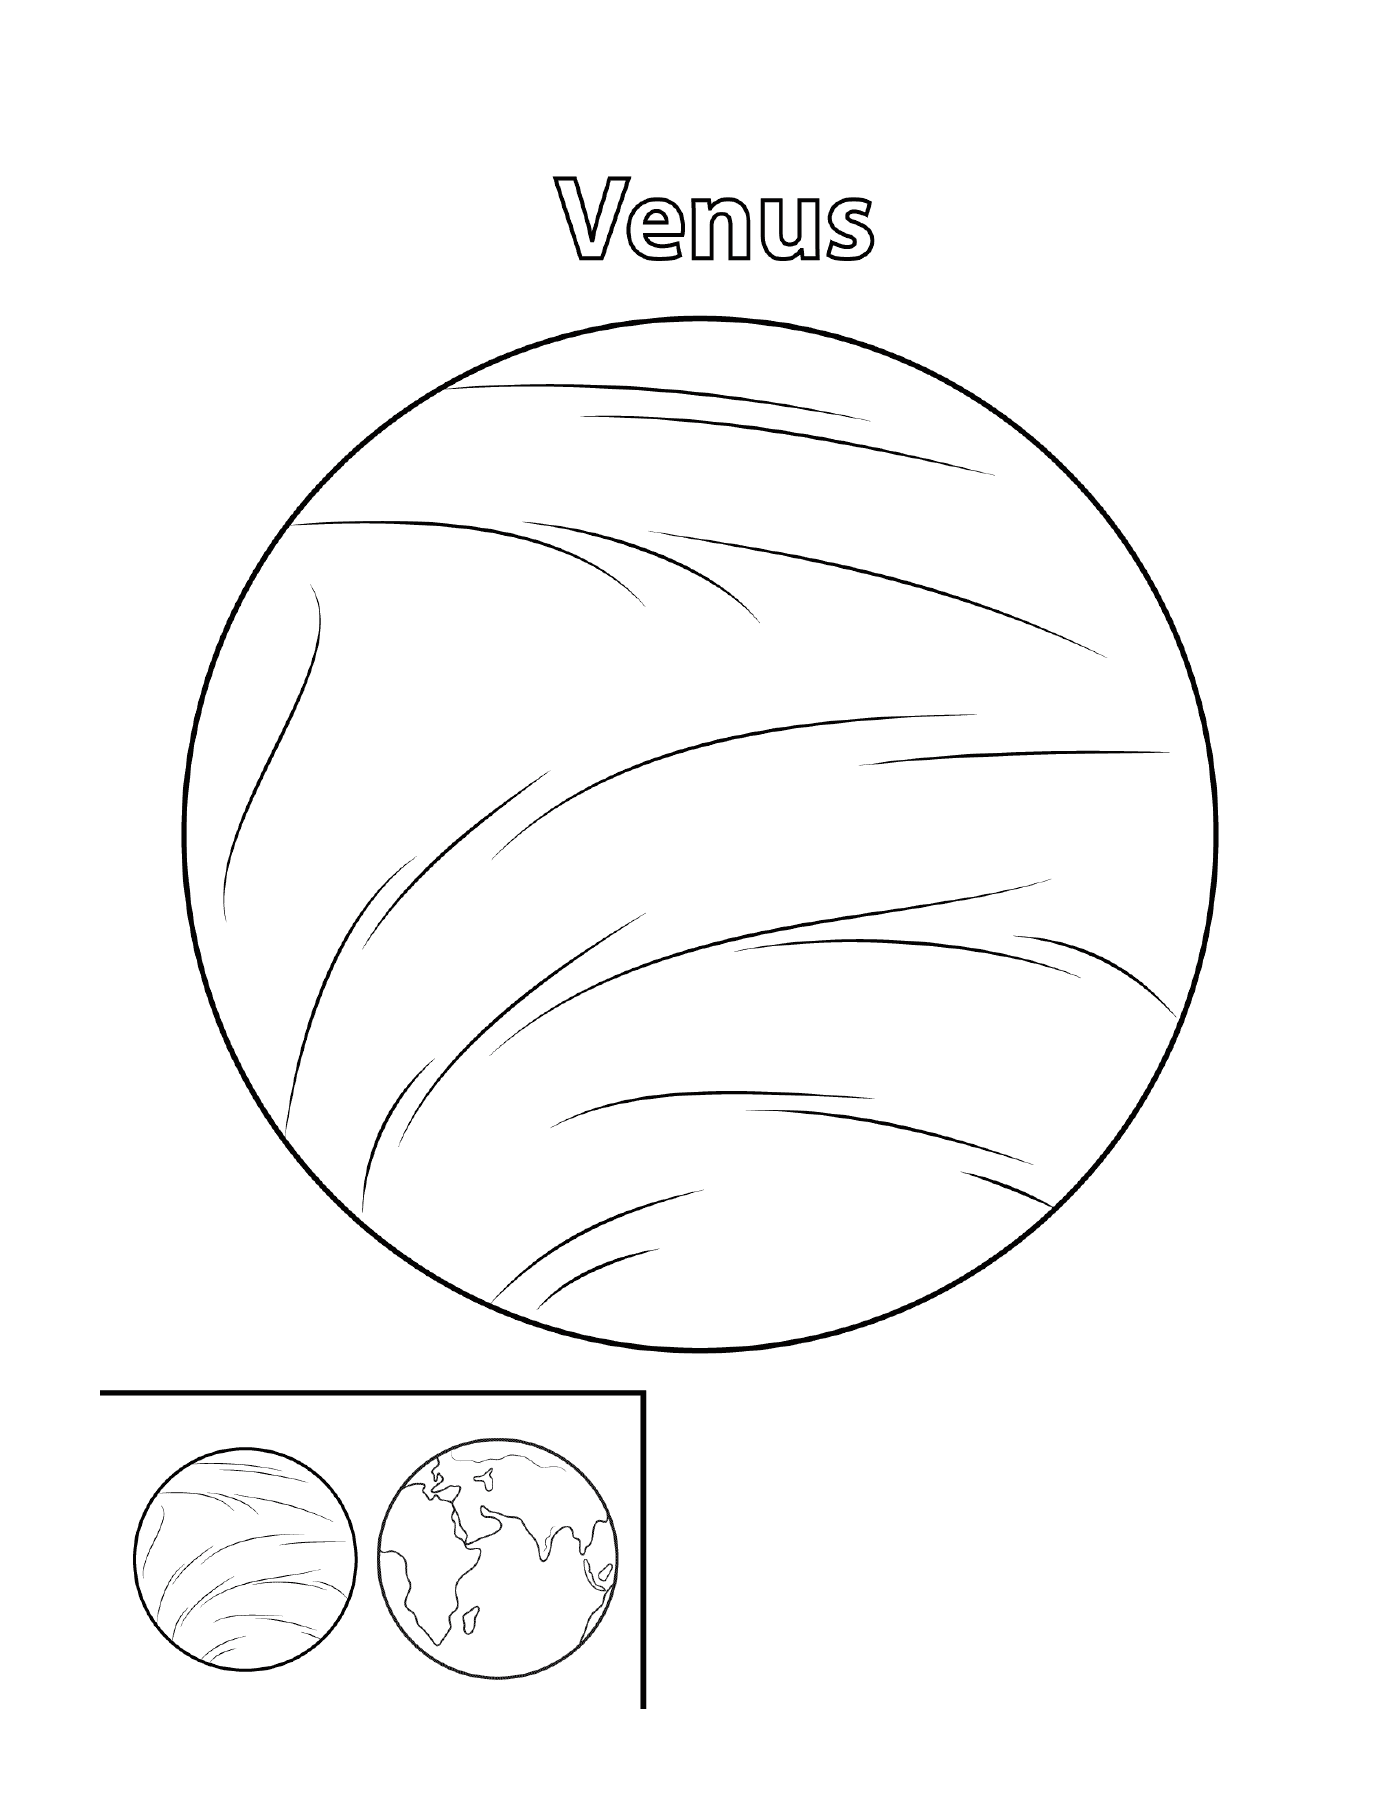  Planeta Vênus no espaço 